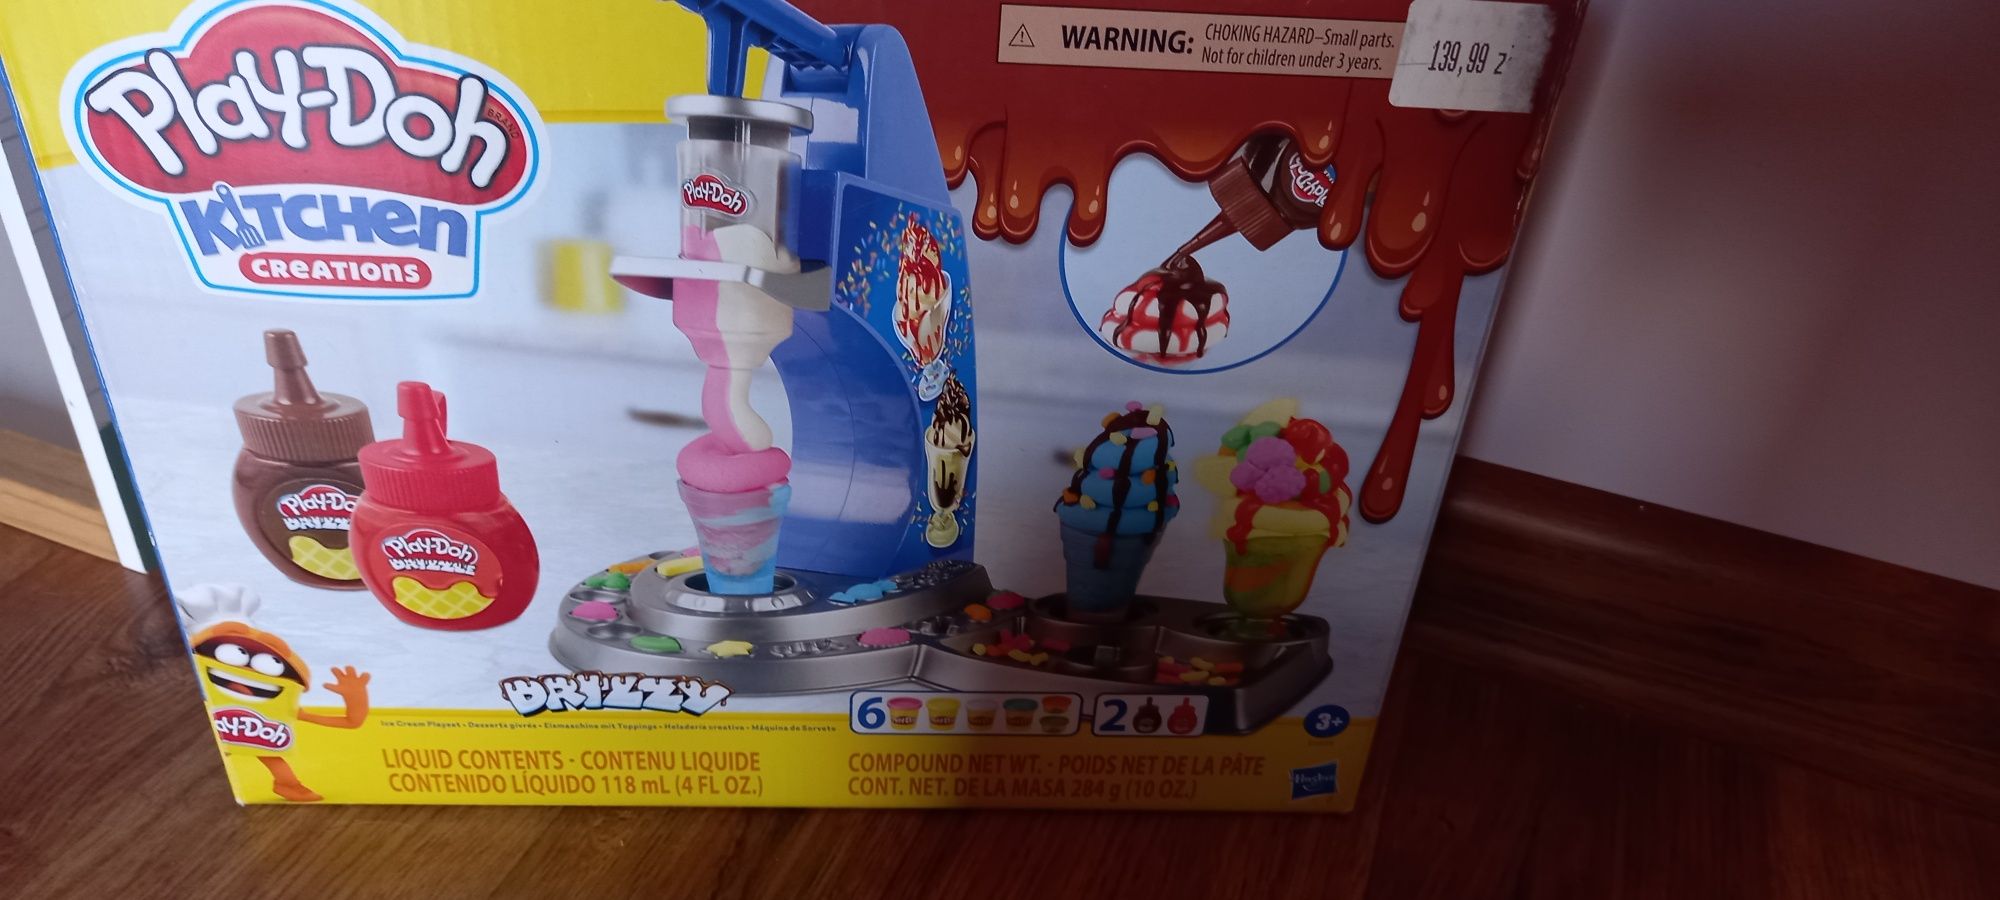 Zestaw do robienia lodów z Play-doh!